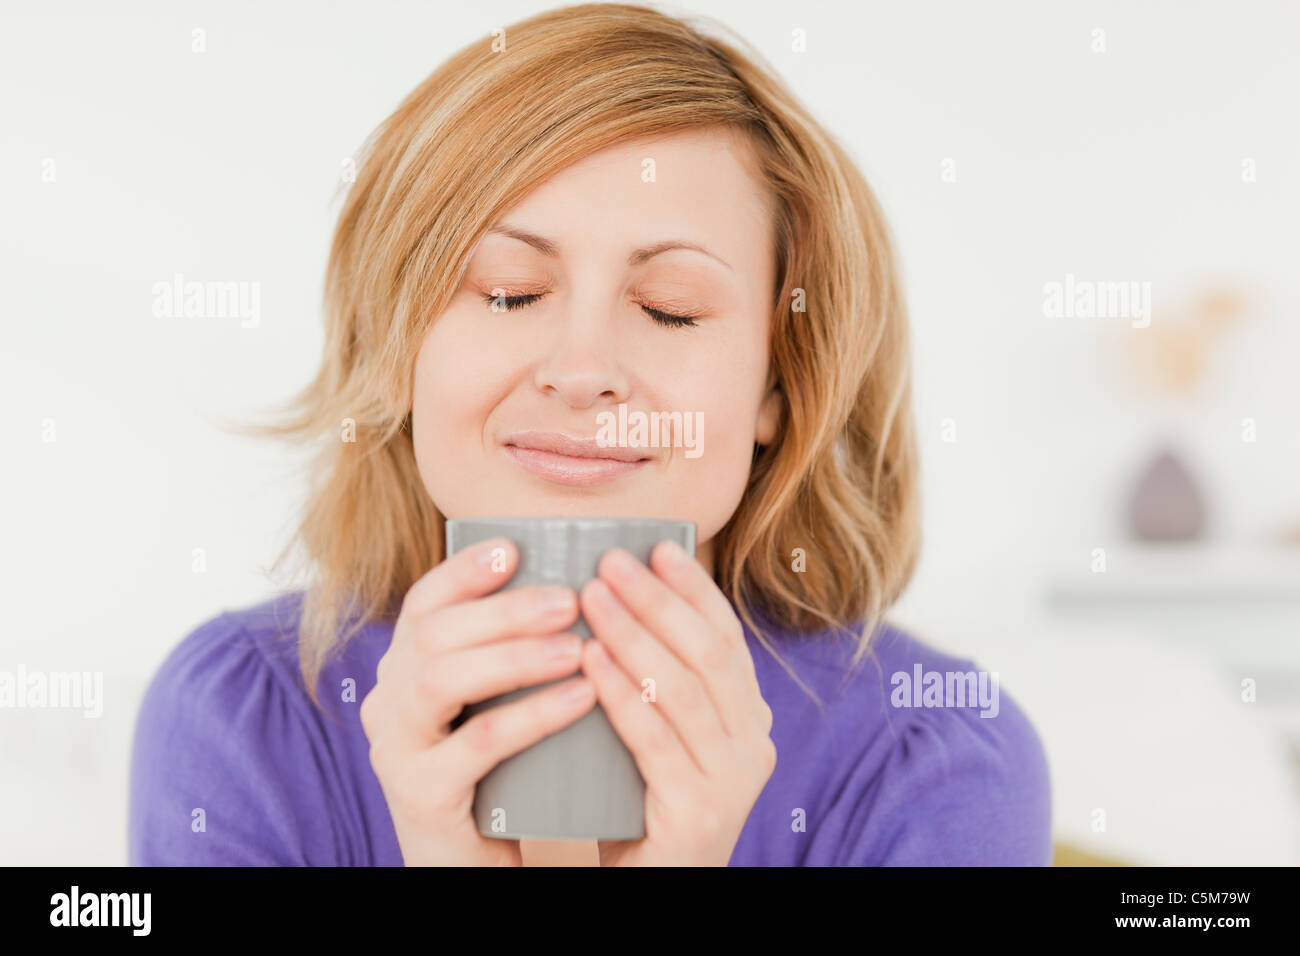 Prety i capelli rossi donna holding e annusare una tazza di caffè mentre è seduto su un divano Foto Stock